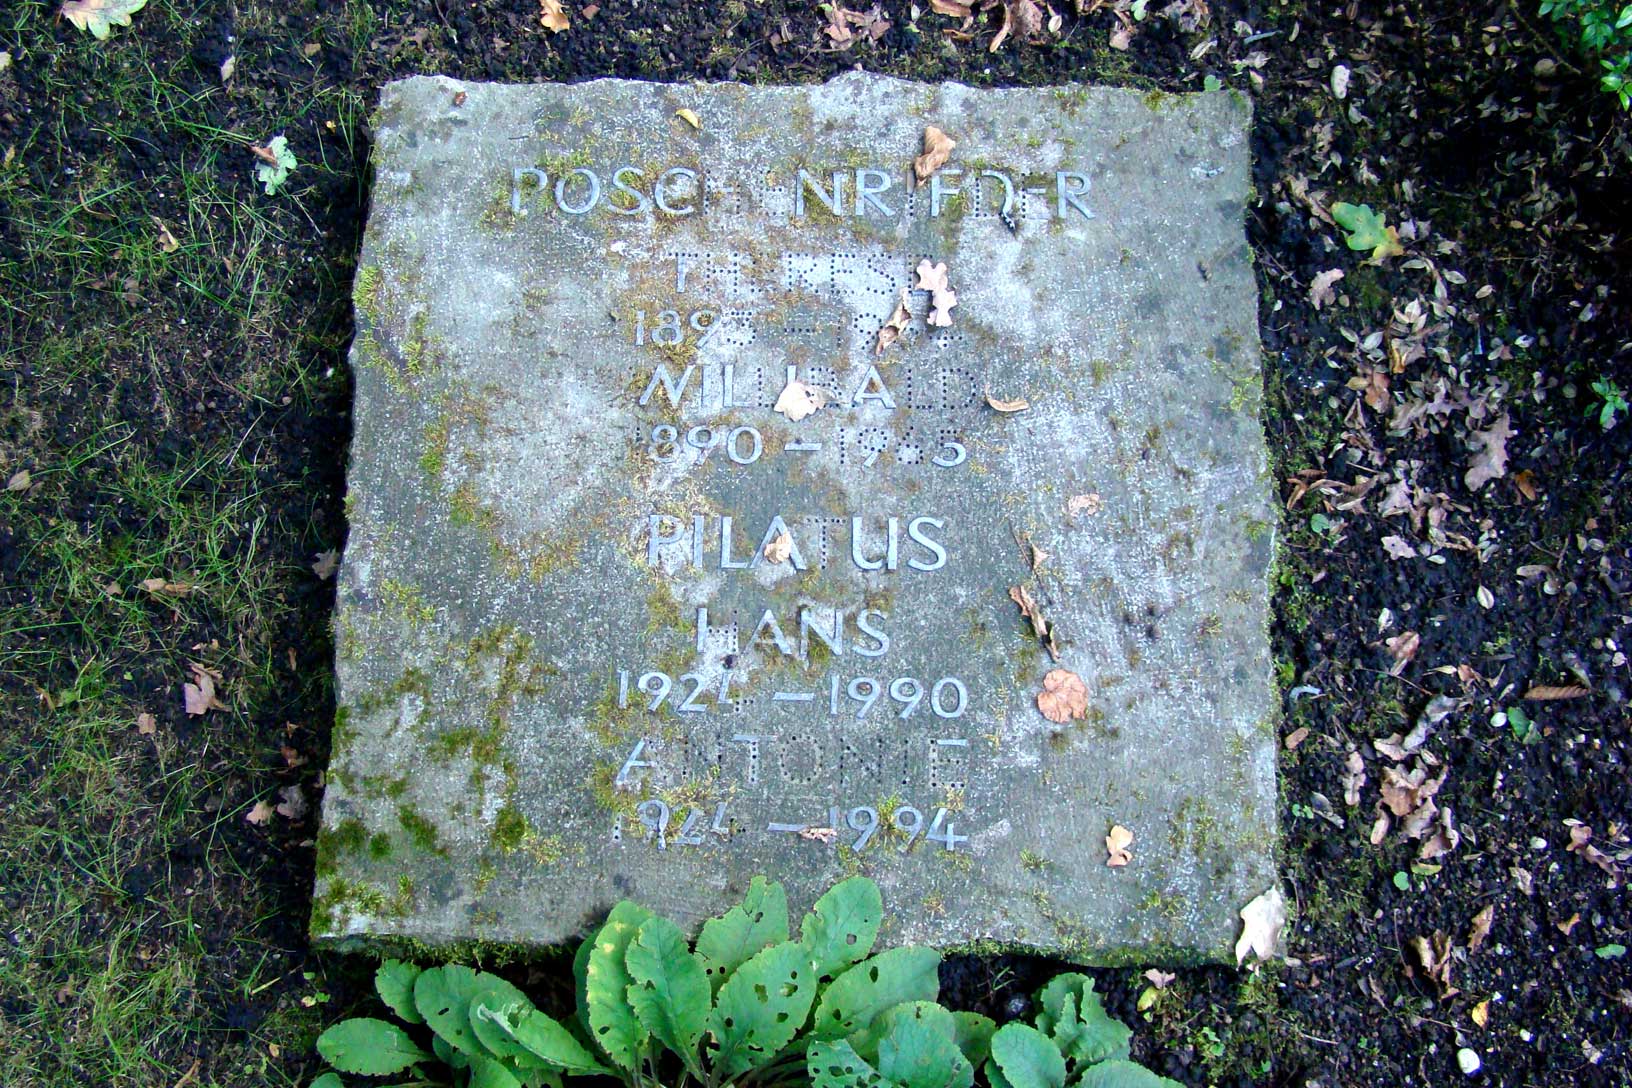 Inschrift auf dem Grabstein von Rob Pilatus. Sein Name ist noch nicht aufgeführt